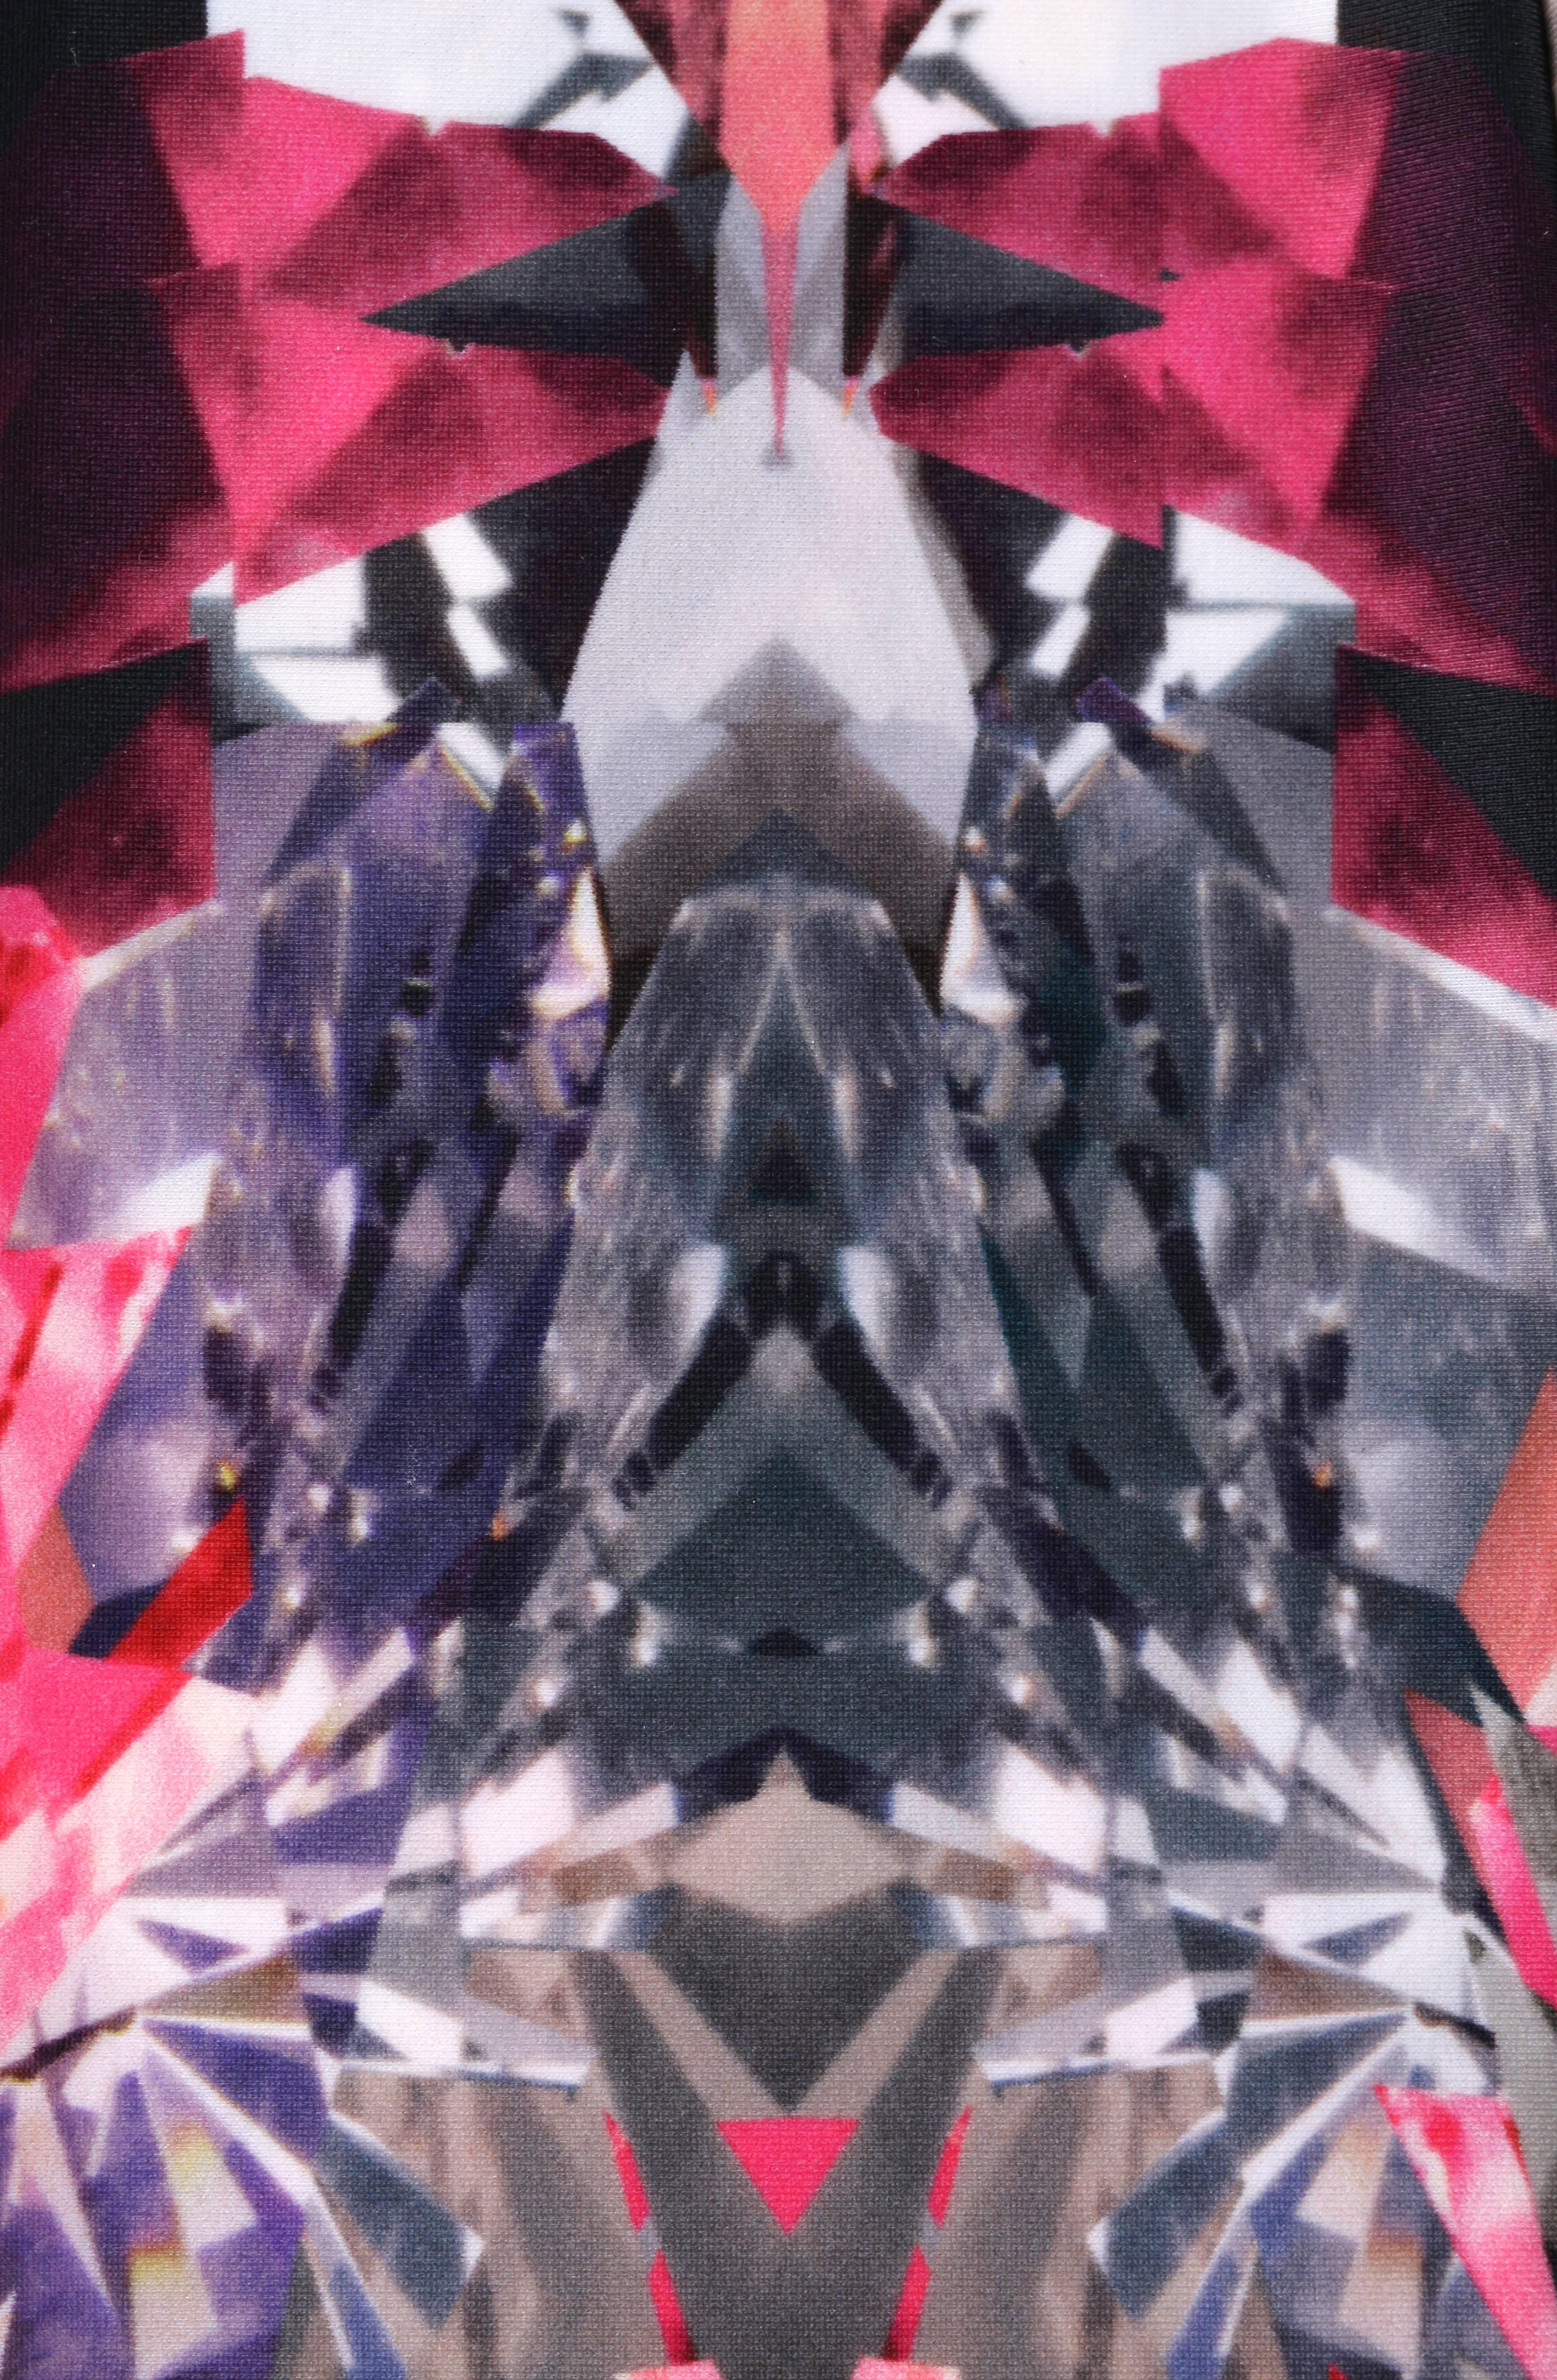 ALEXANDER MCQUEEN S/S 2009 Pink Crystal Kaleidoscope Print Leggings Pants Sz XS 2